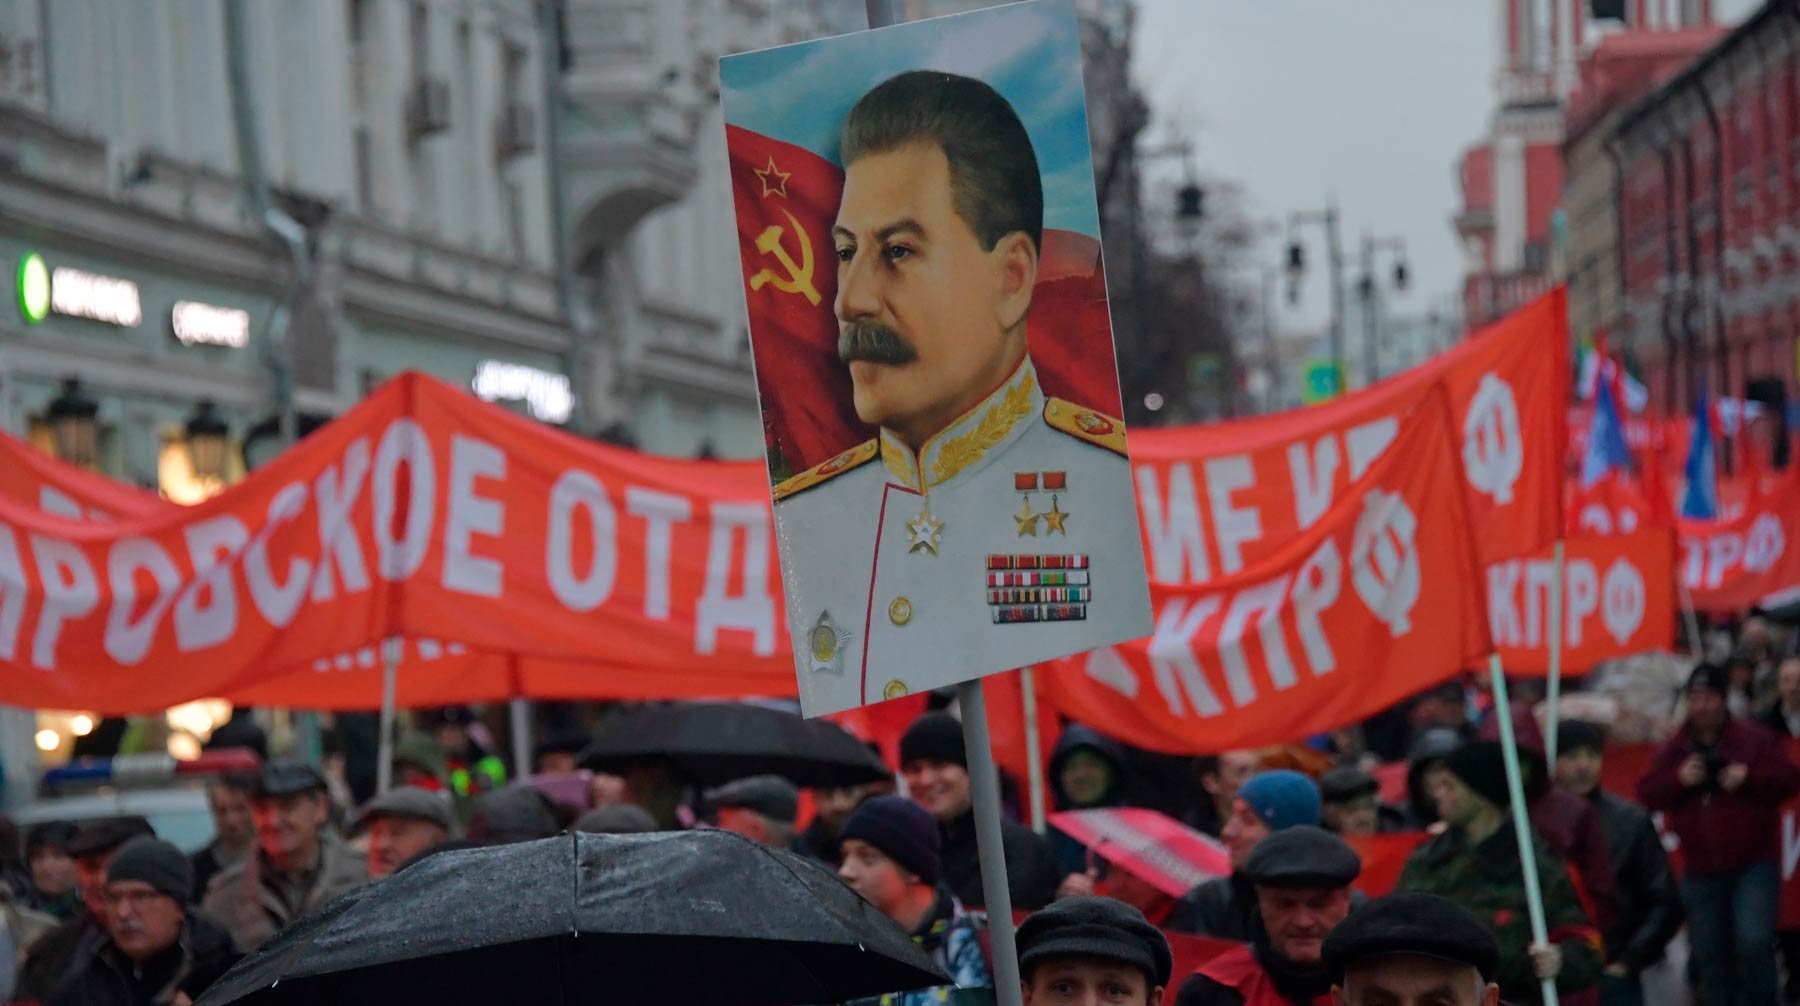 Местные коммунисты увидели в инициативе признаки «весеннего обострения» Фото: © Global Look Press / Komsomolskaya Pravda